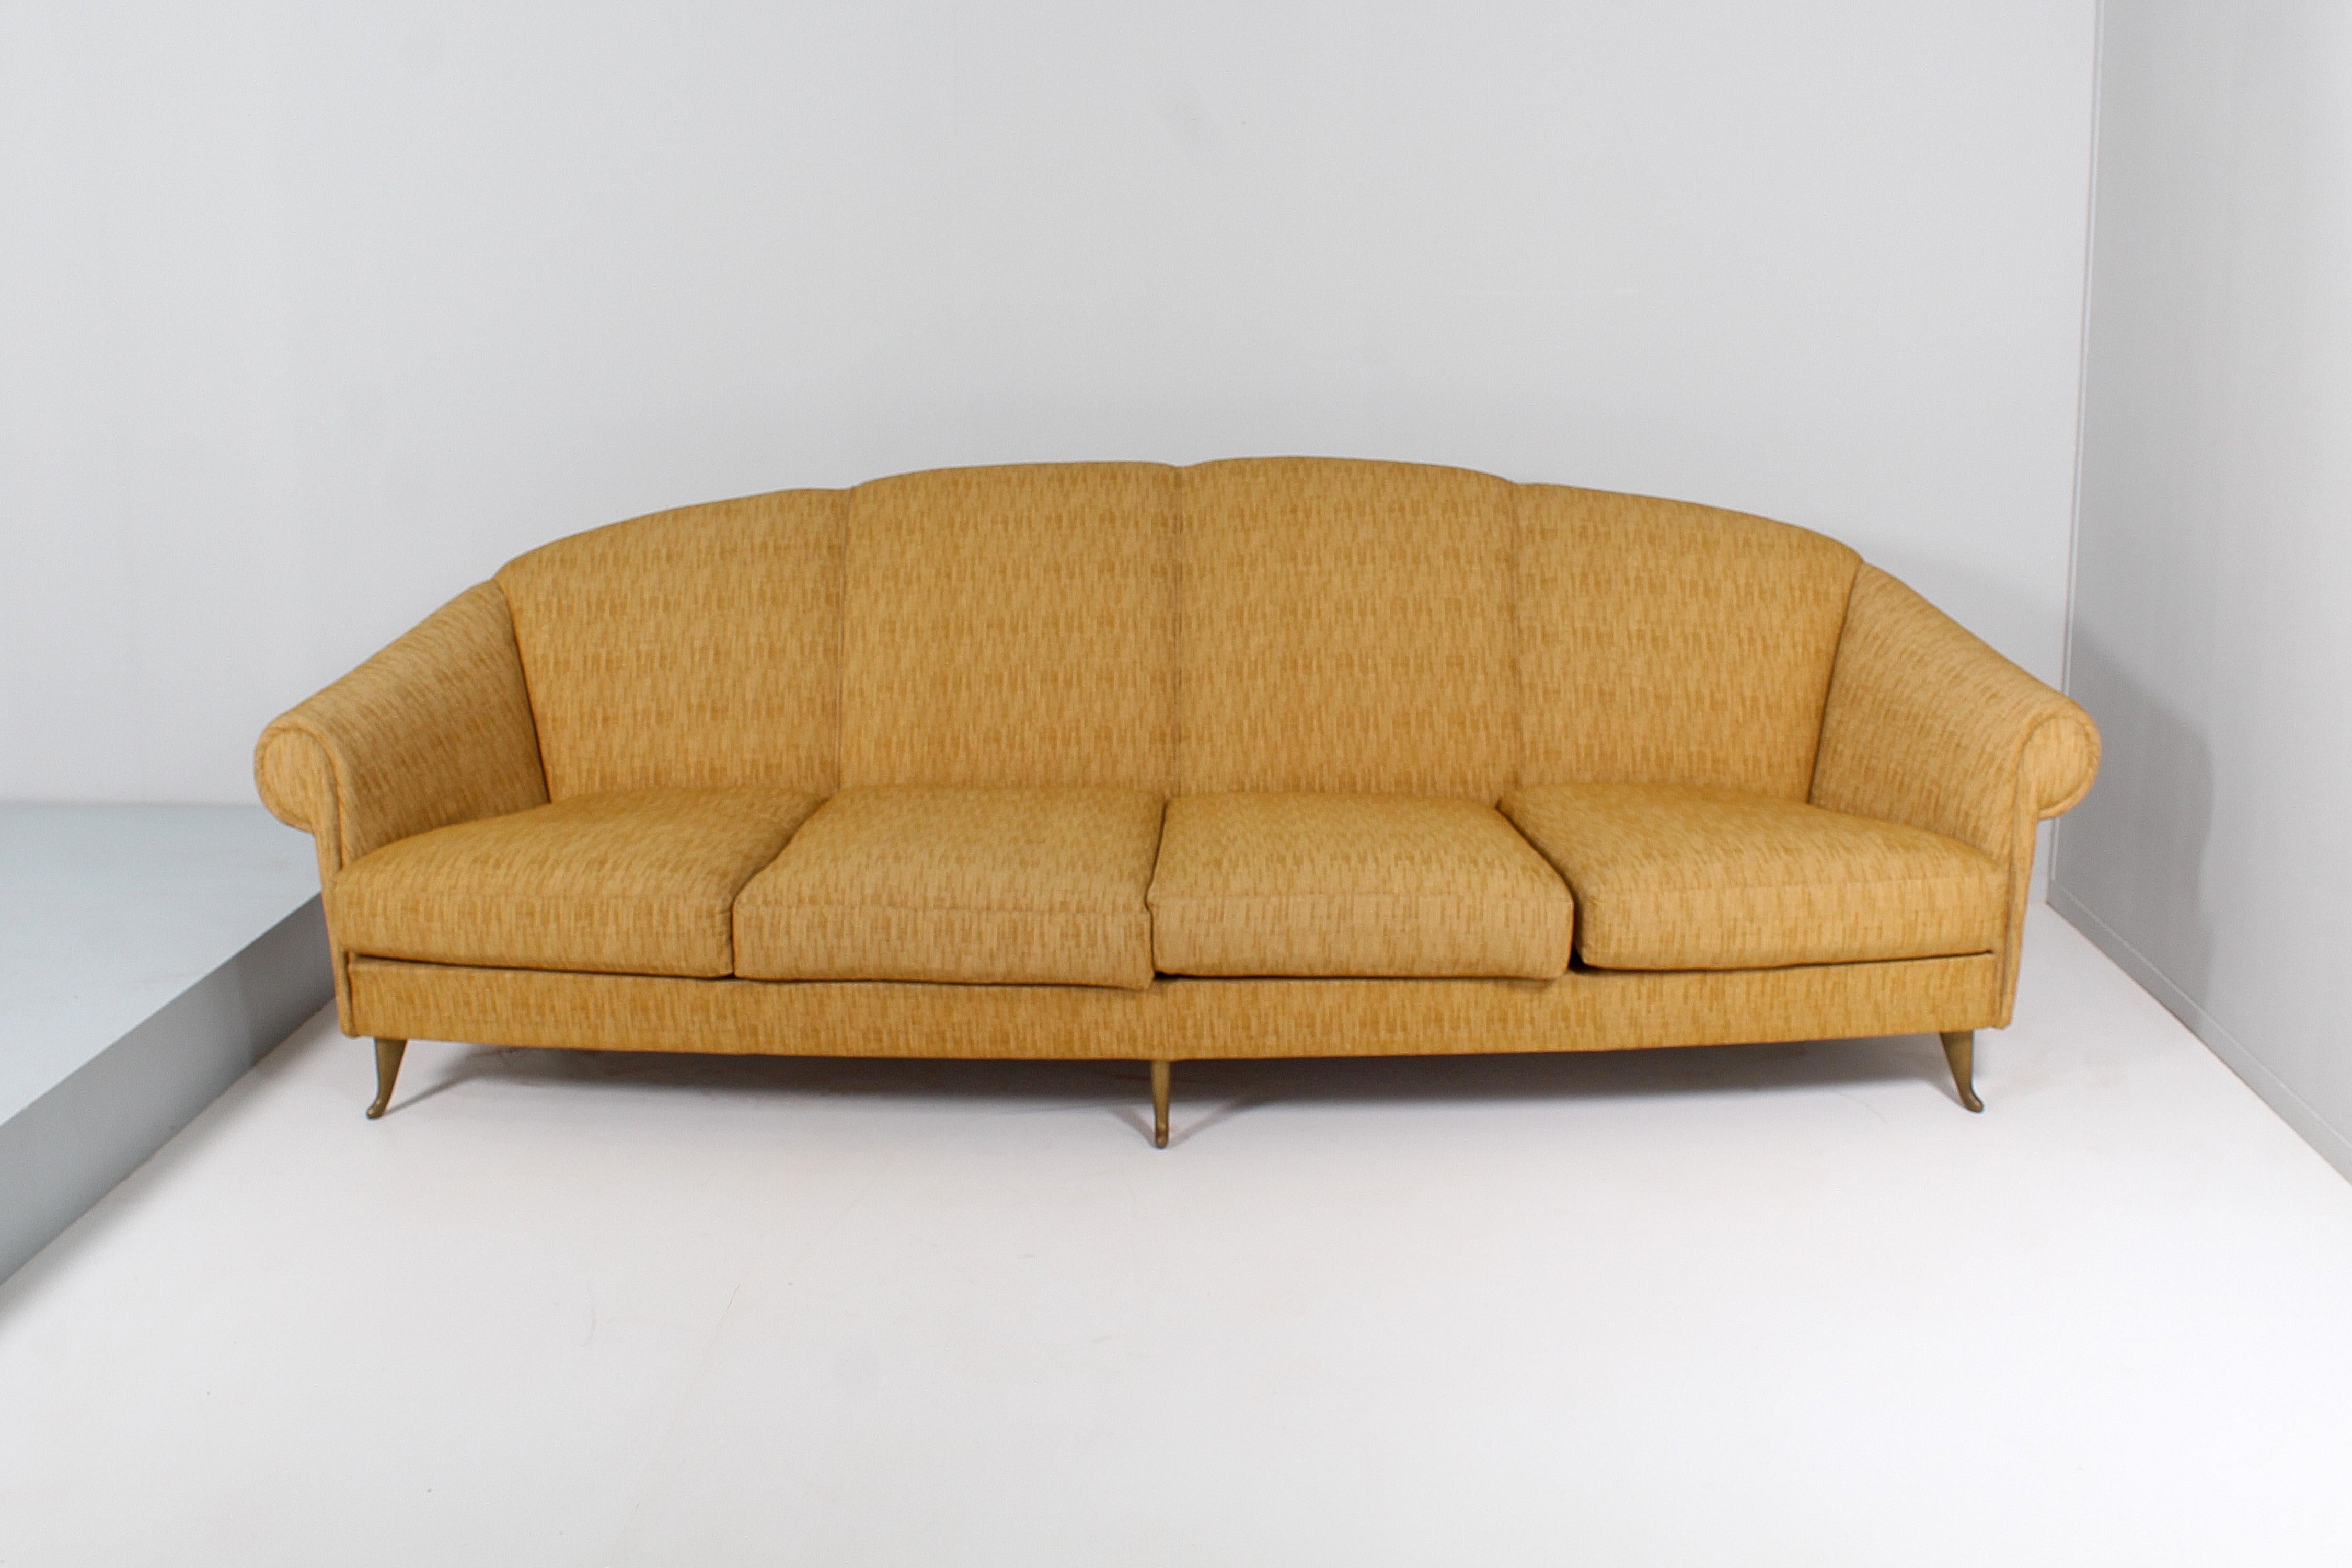 Imposantes und schönes 4-Sitzer-Sofa mit Holzgestell, Messingfüßen und mit senffarbenem Originalstoff bezogenem pad, mit Sitzfläche mit vier Kissen. Giò Ponti zugeschrieben, italienische Herstellung durch ISA Bergamo aus den 60er Jahren. Etikett des